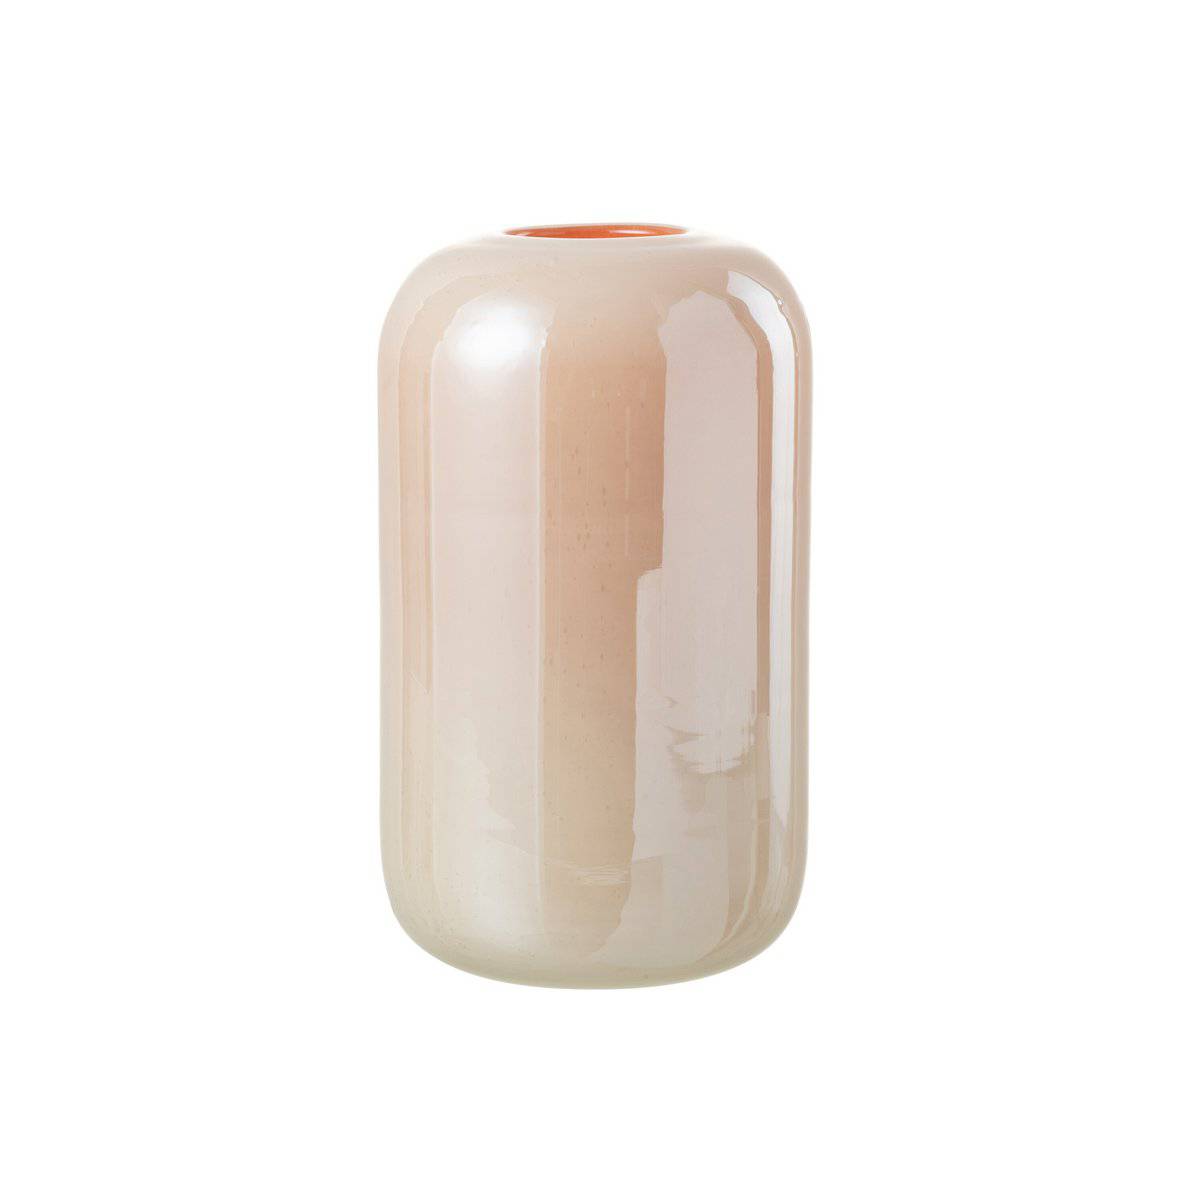 J-Line Vase Julien Glass Orange/Pink Large - 29 cm high